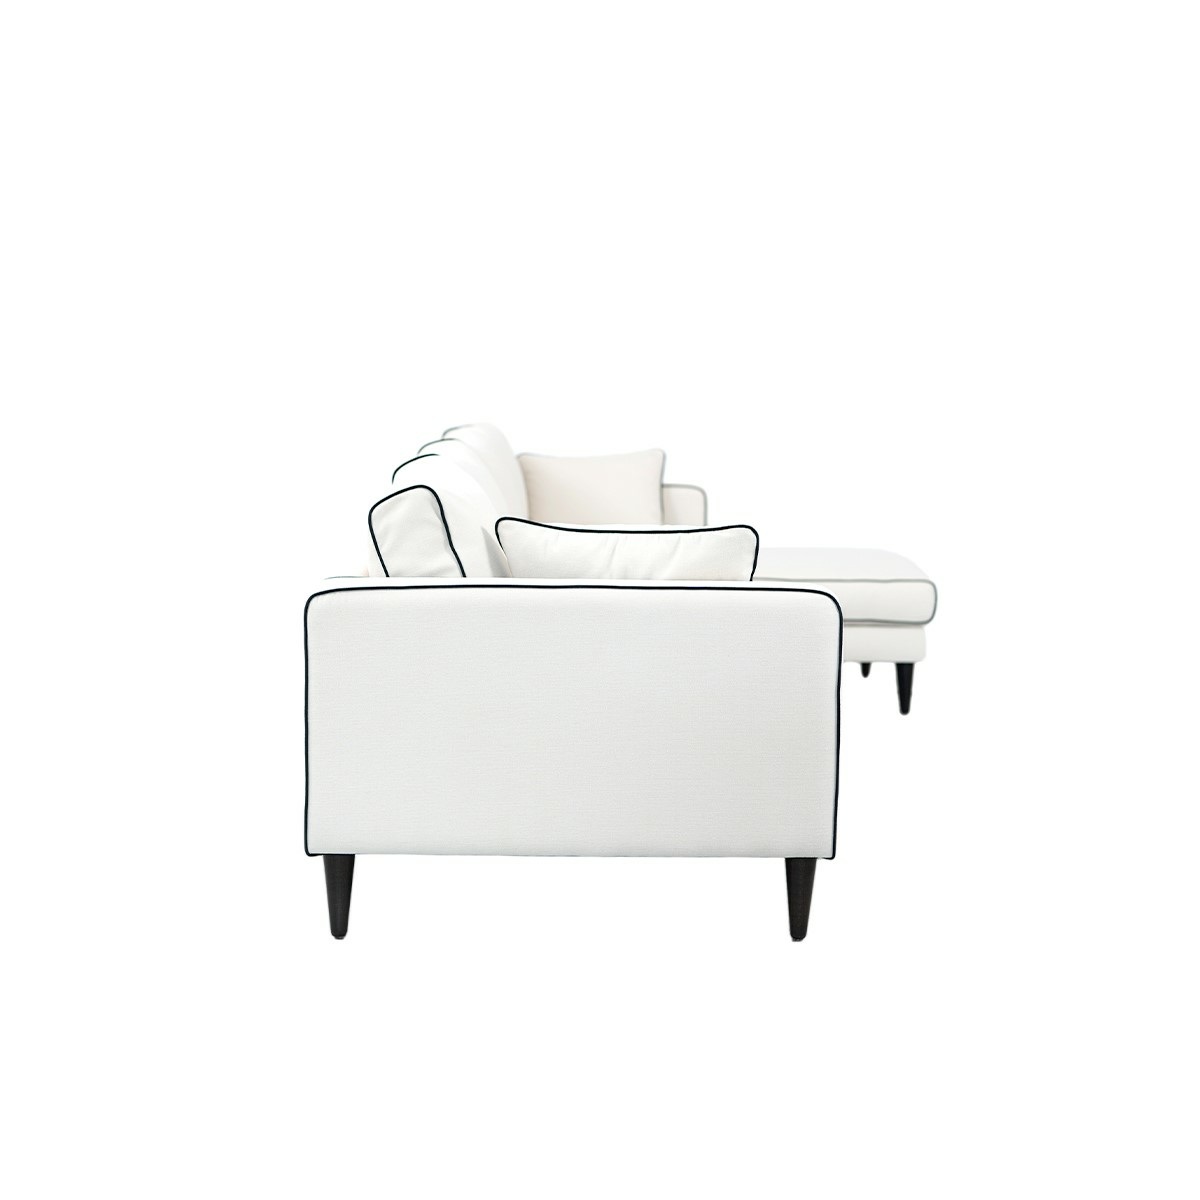 Noa corner sofa - Right angle, Different sizes - Cotton - image 4